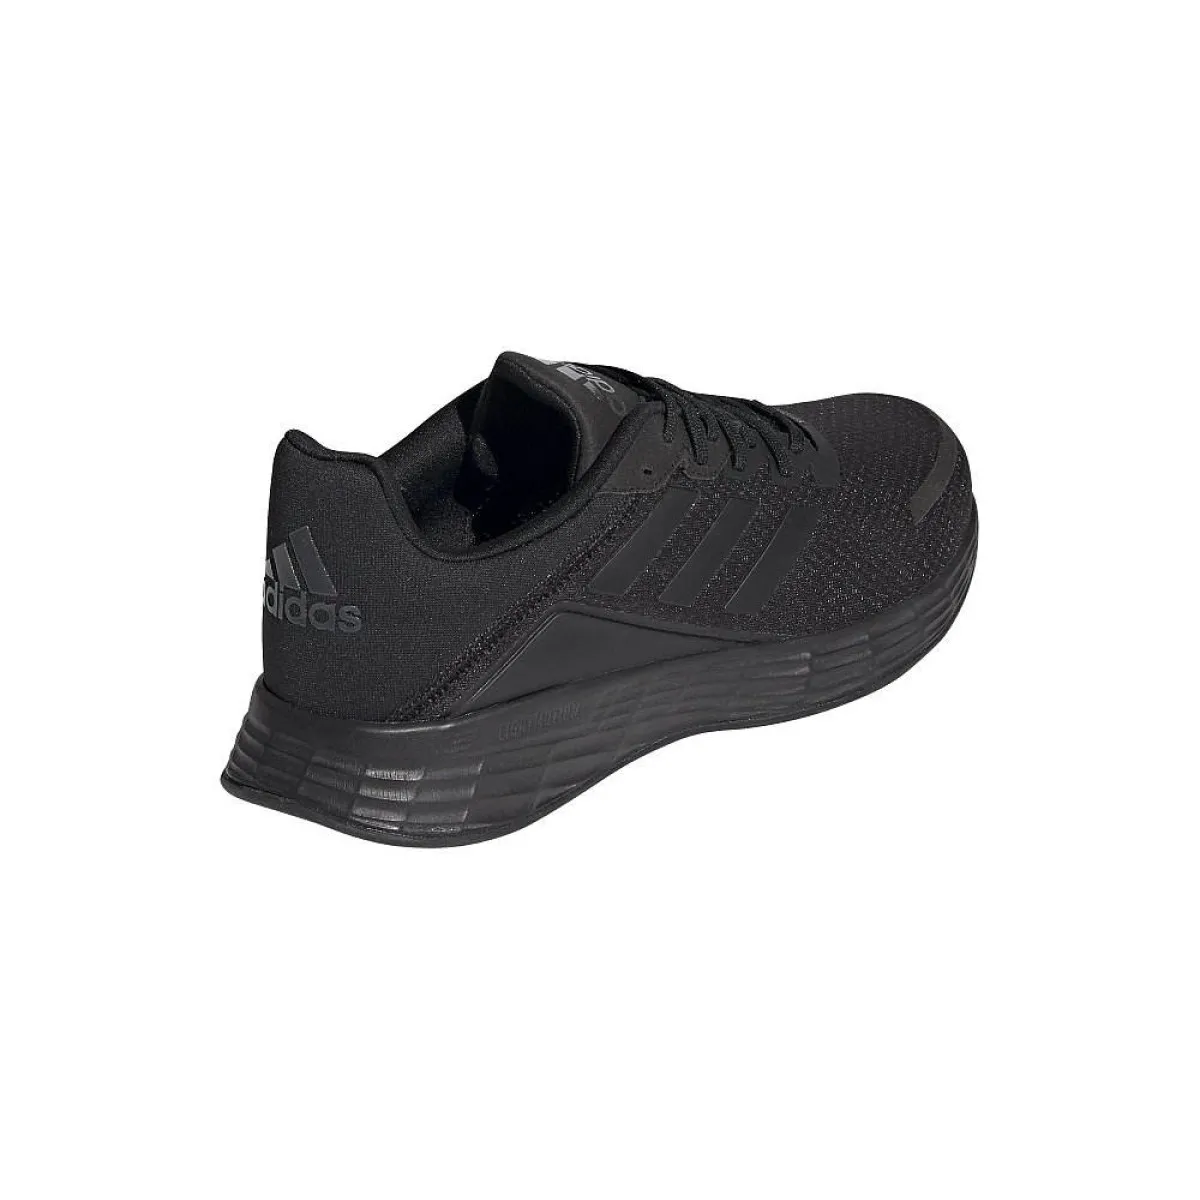 Zapatillas deportivas adidas Duramo SL negras